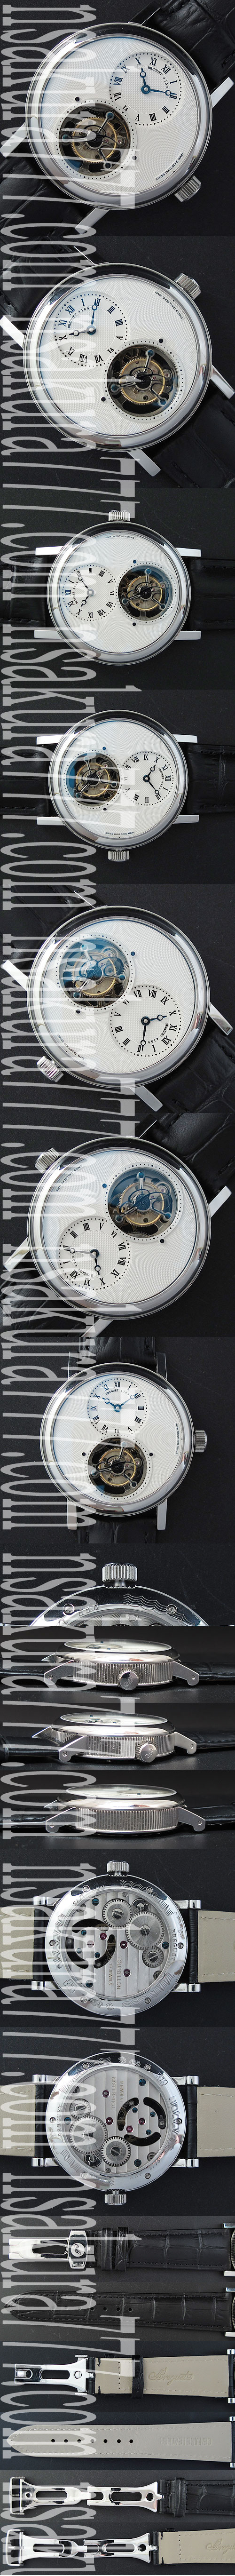 ブランド ブレゲメンズ腕時計 クラシック グランド トゥールビヨン 21600振動 1654366